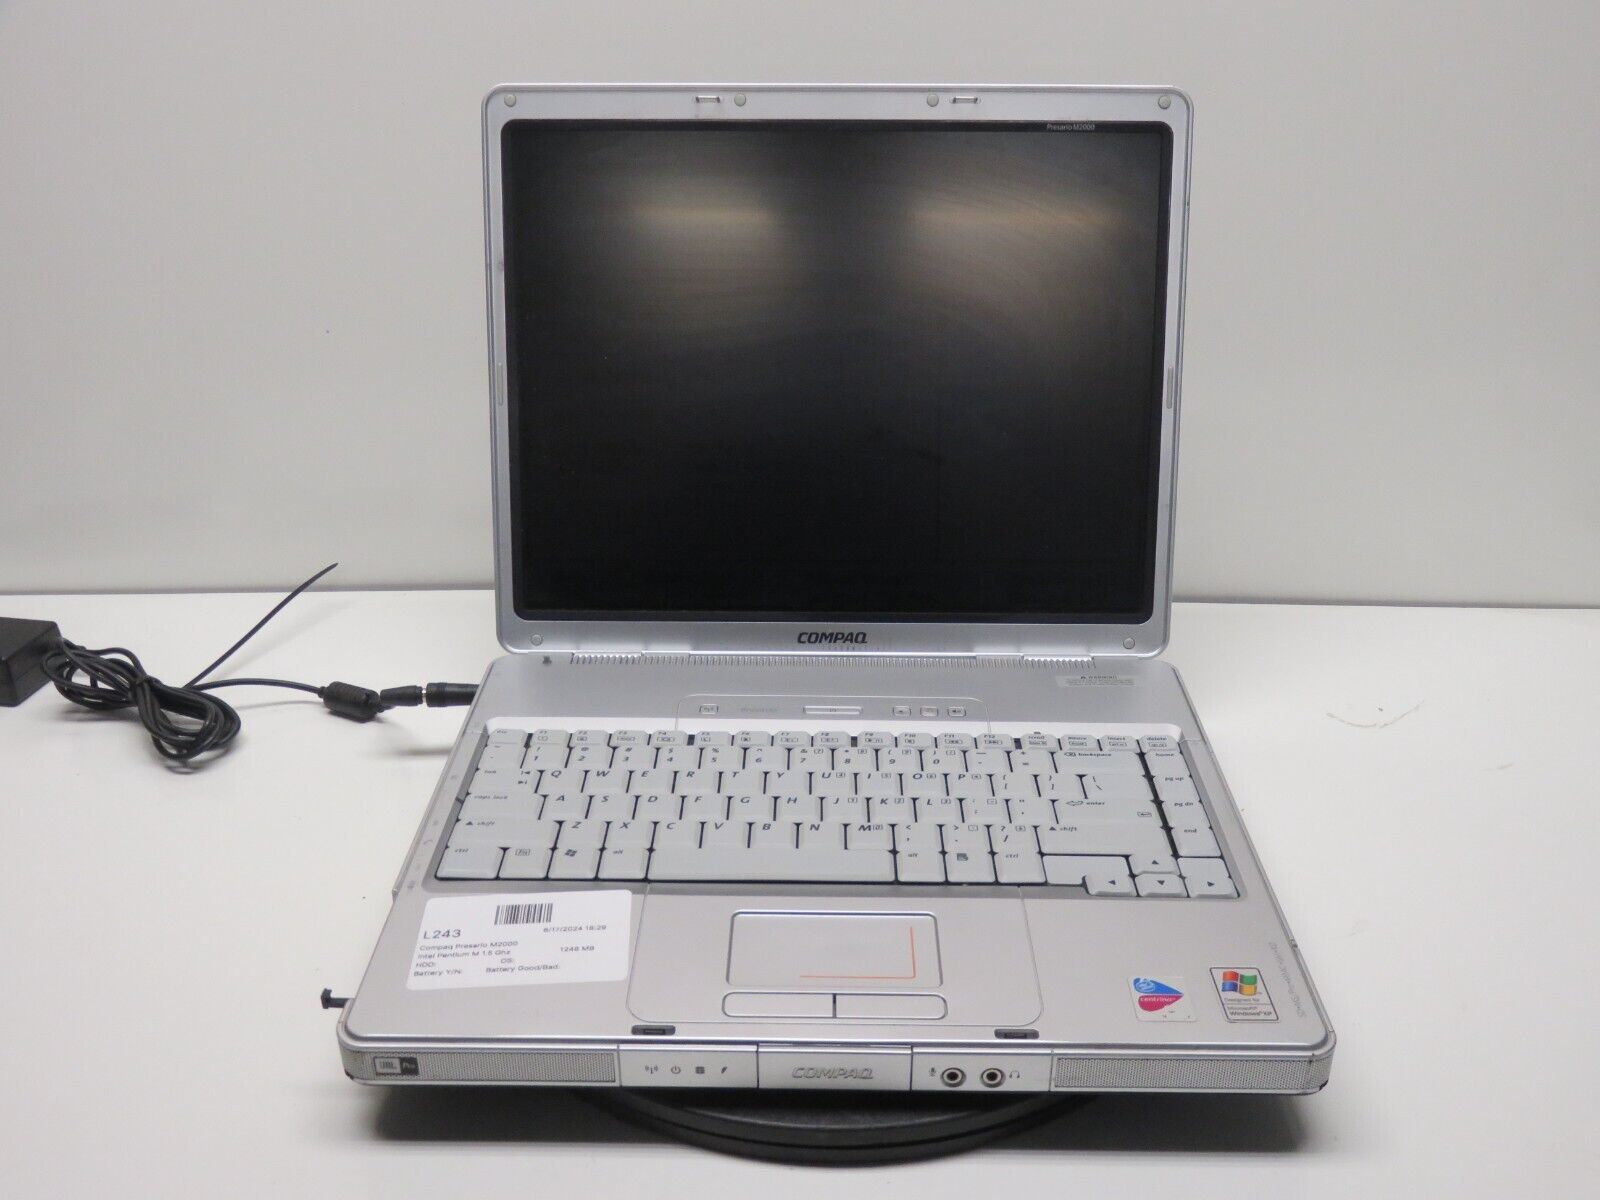 Compaq Presario M2000 Laptop Intel Pentium M 1.5GHz 1GB Ram No HDD